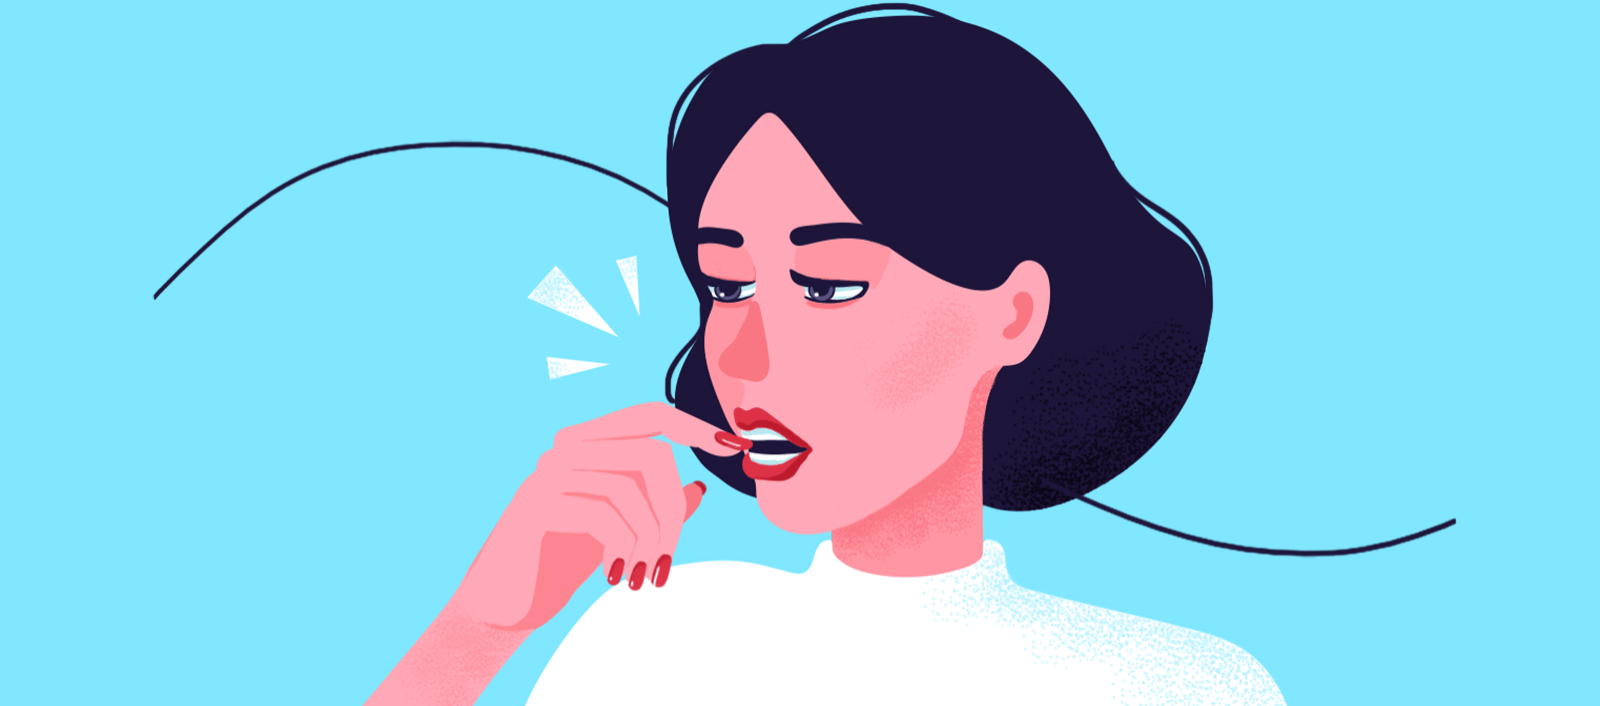 舌头肿胀:一种奇怪的焦虑症状